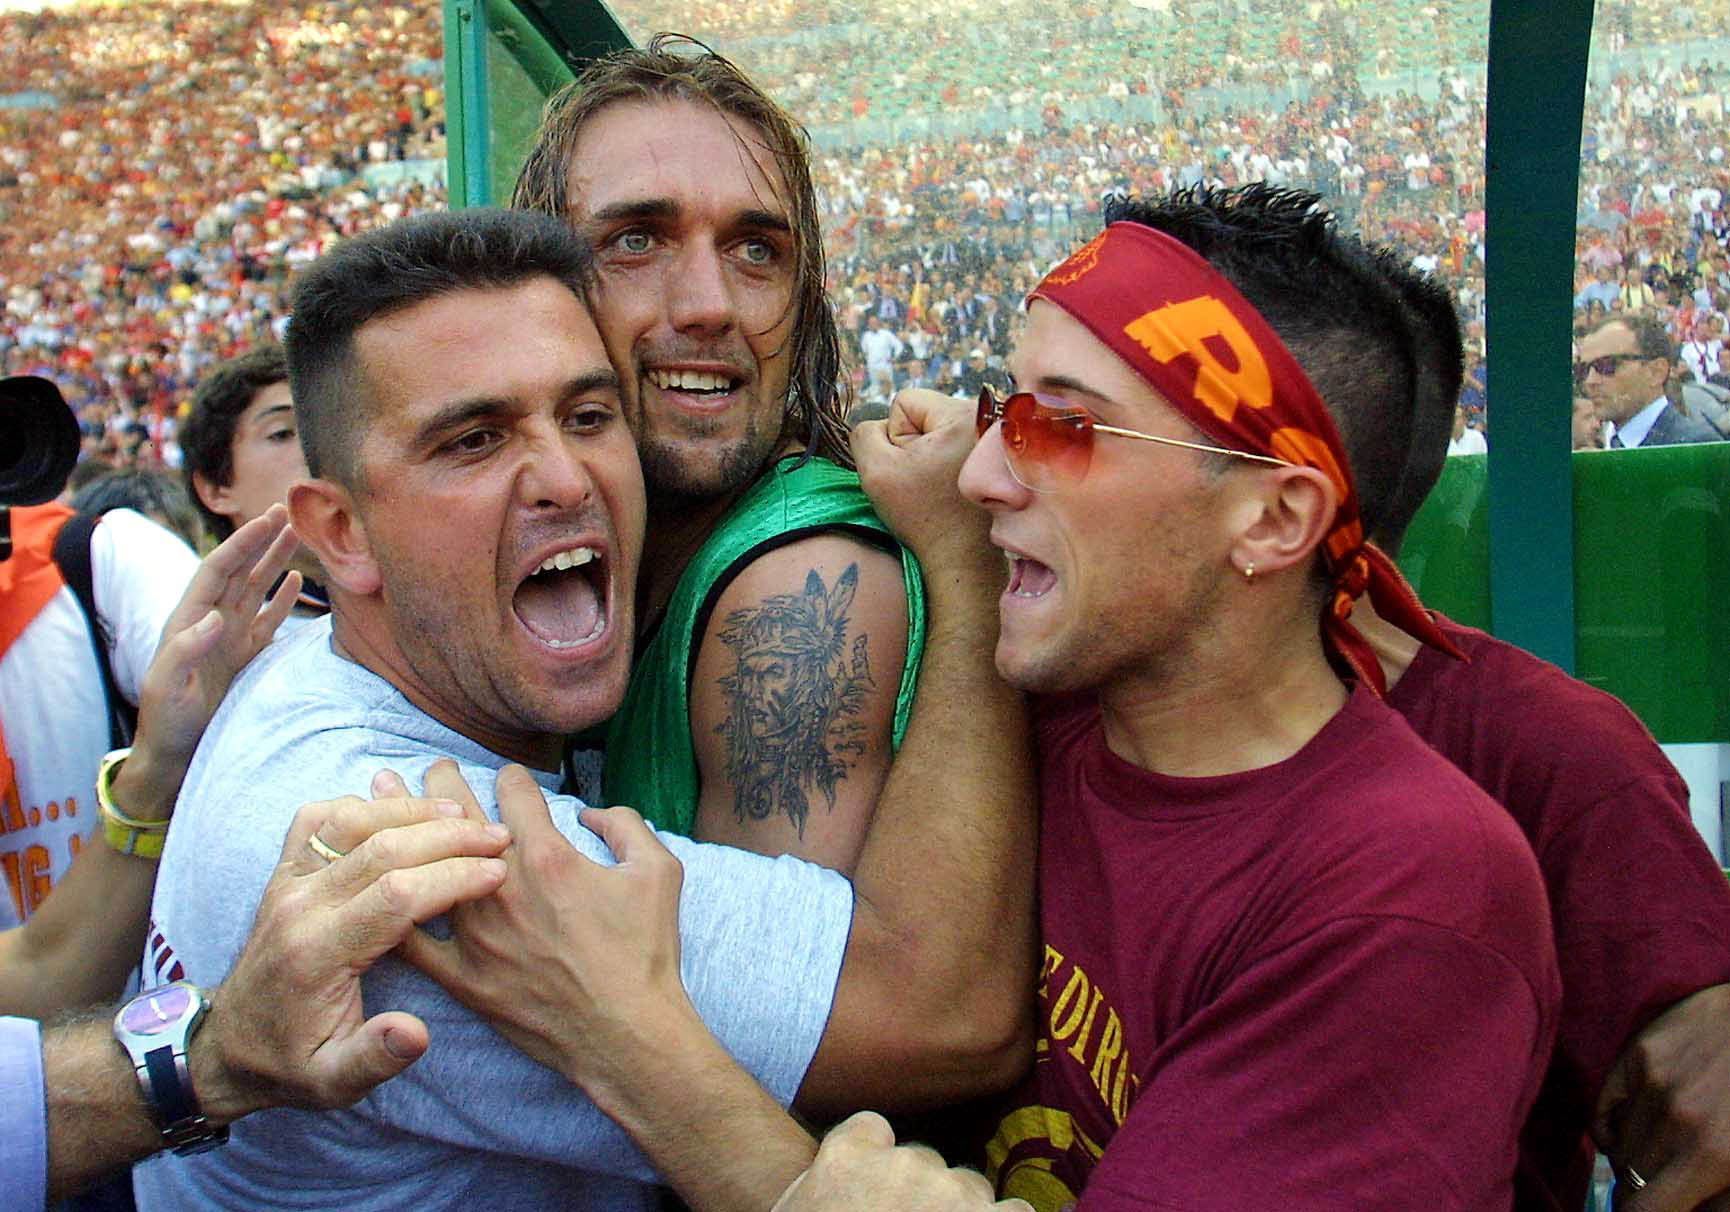 Gabriel Batistuta celebrates winning the scudetto with Roma fans.